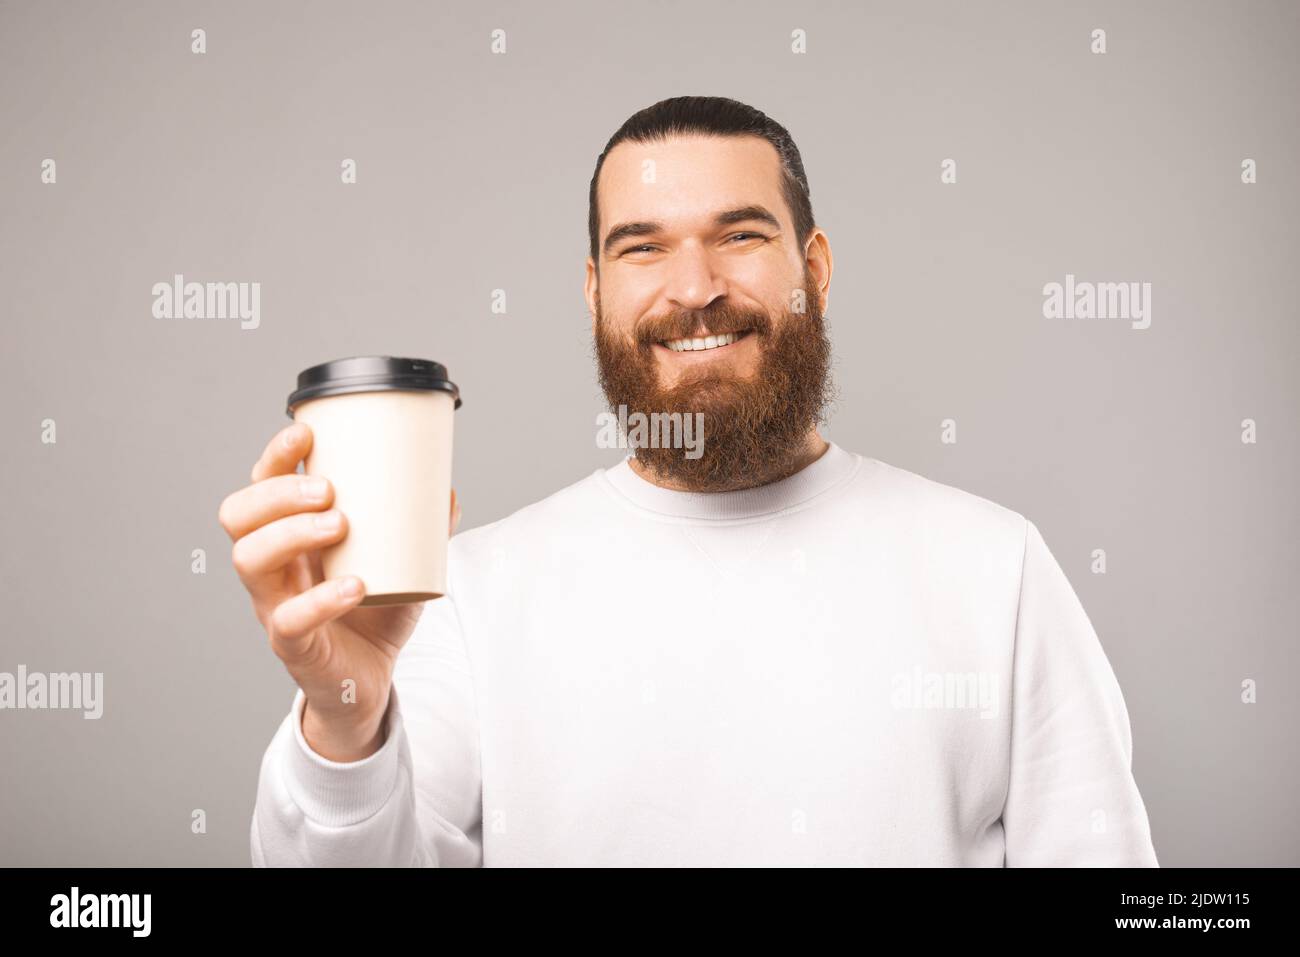 Porträt eines lächelnden bärtigen Mannes, der eine Tasse Kaffee hält und Ihnen gibt. Sudio-Aufnahme auf grauem Hintergrund. Stockfoto